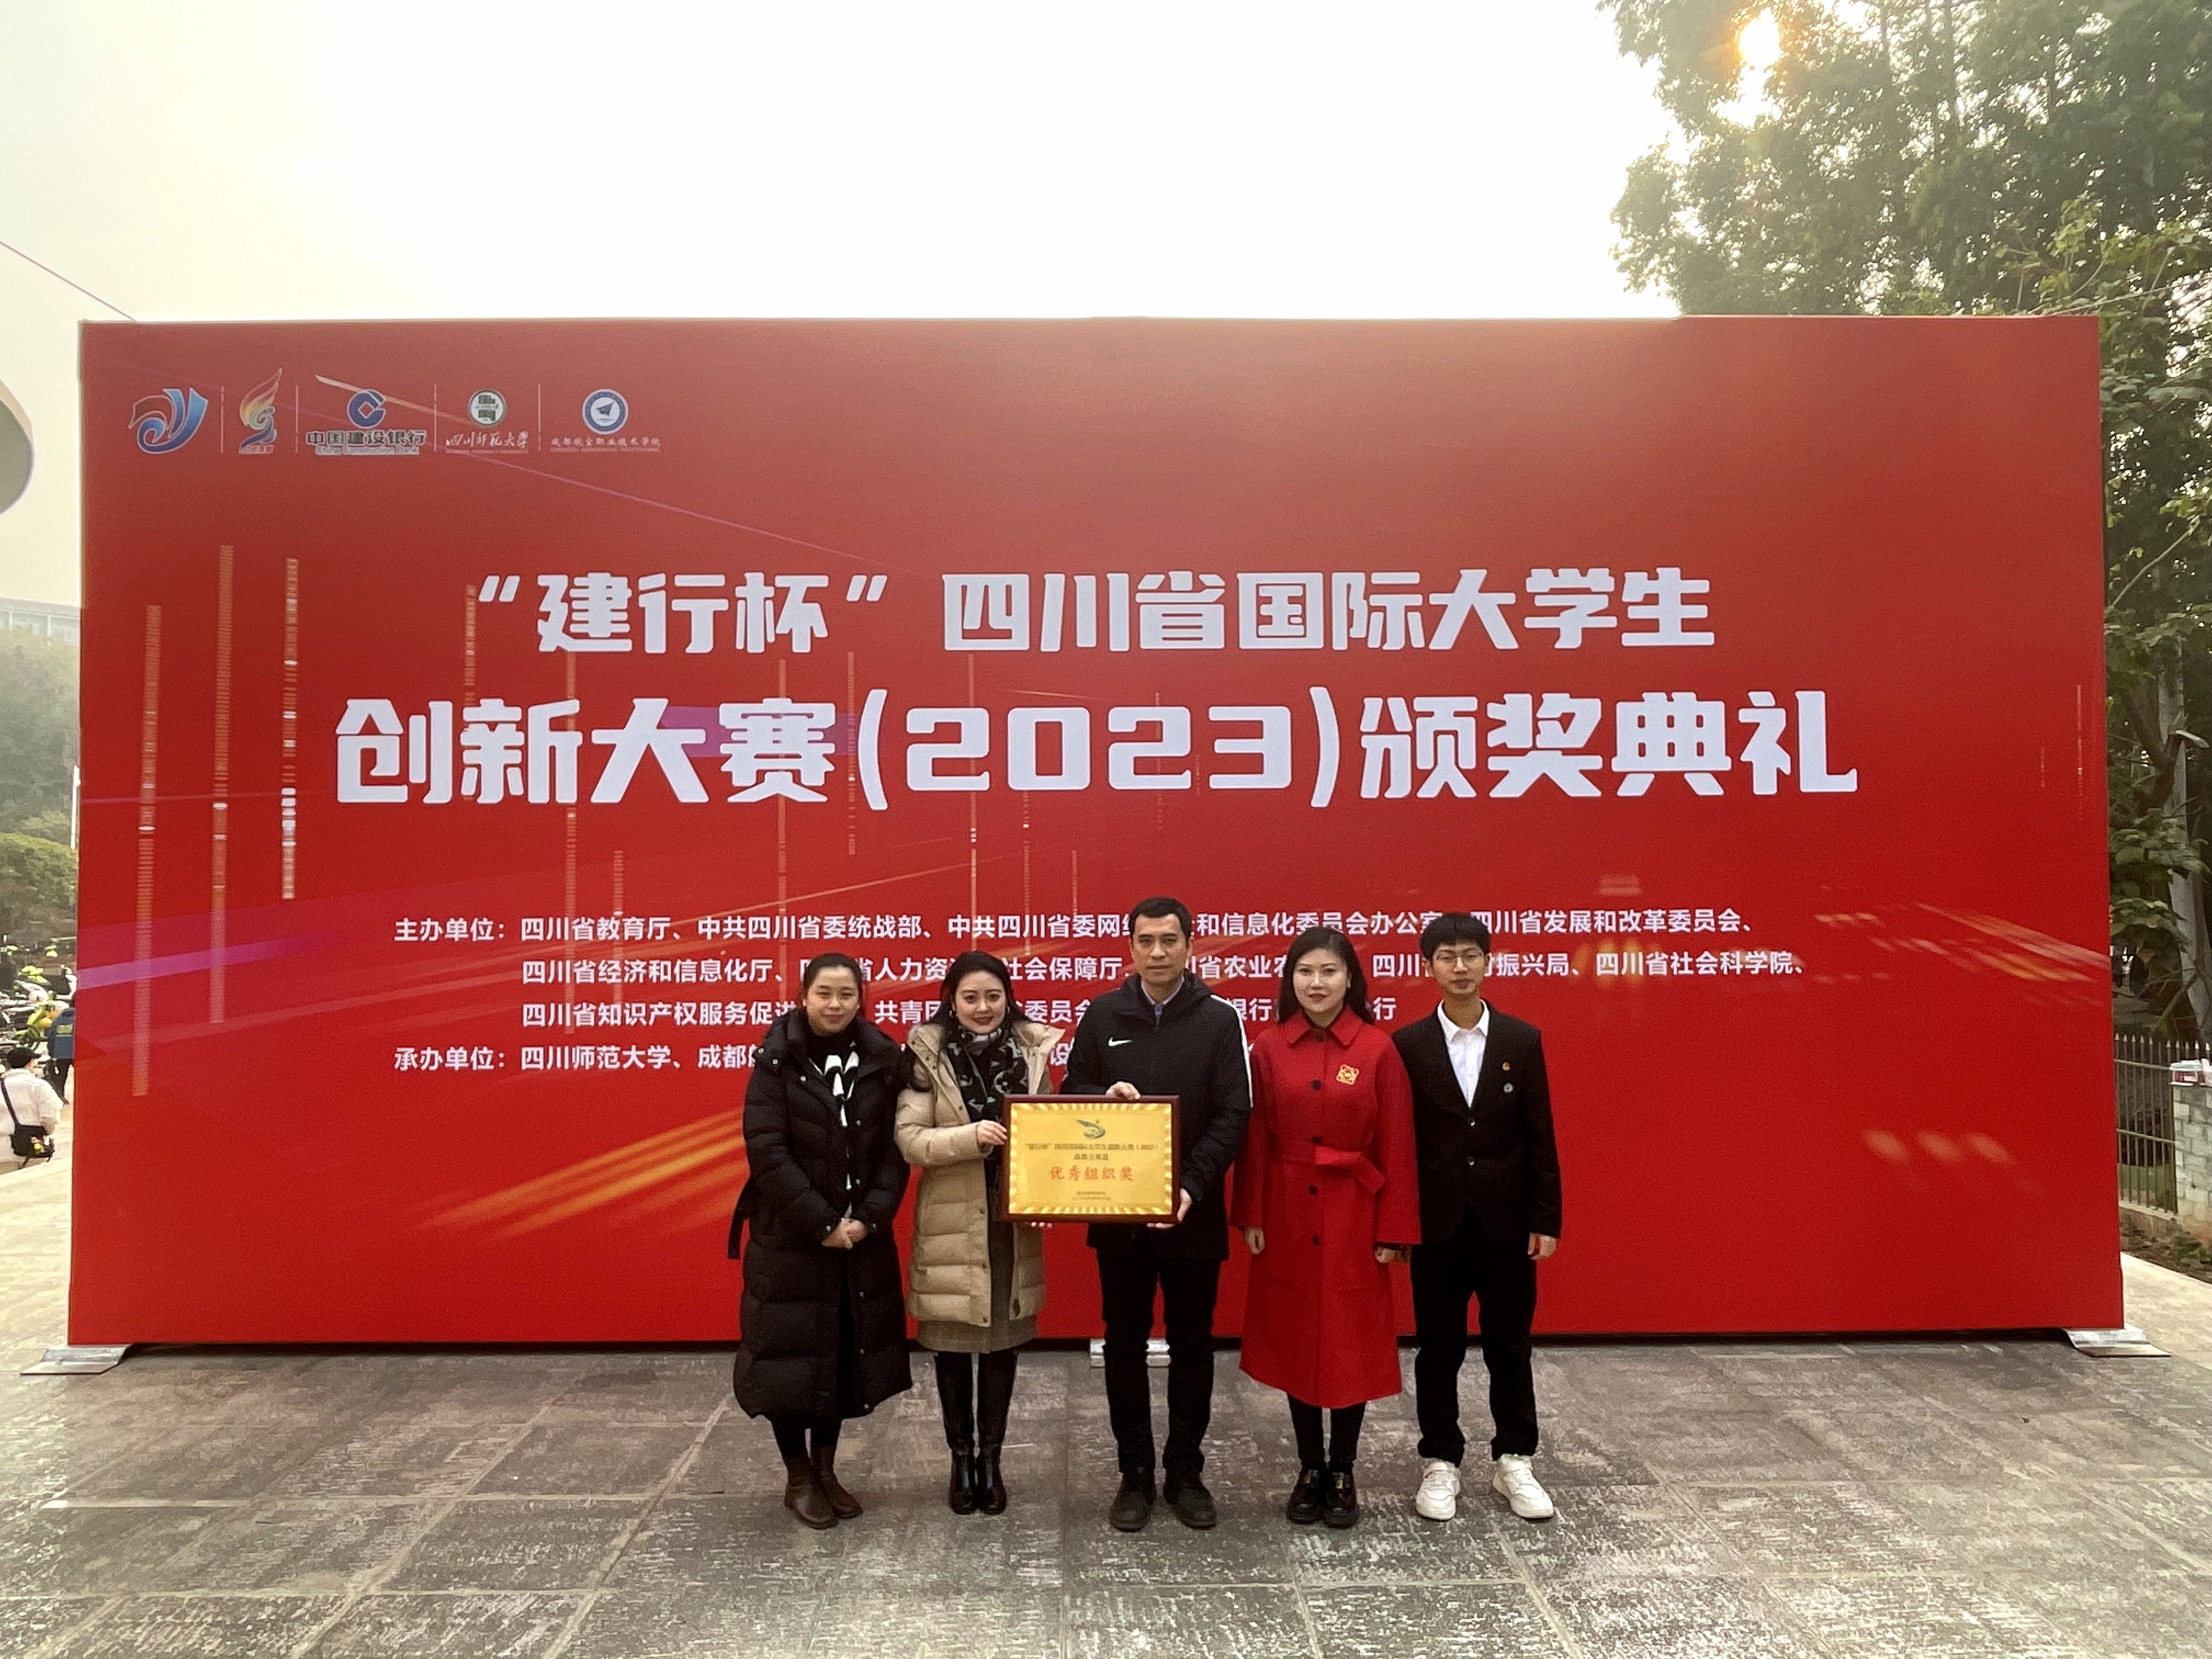 我校荣获四川省国际大学生创新大赛“优秀组织奖”及多项荣誉